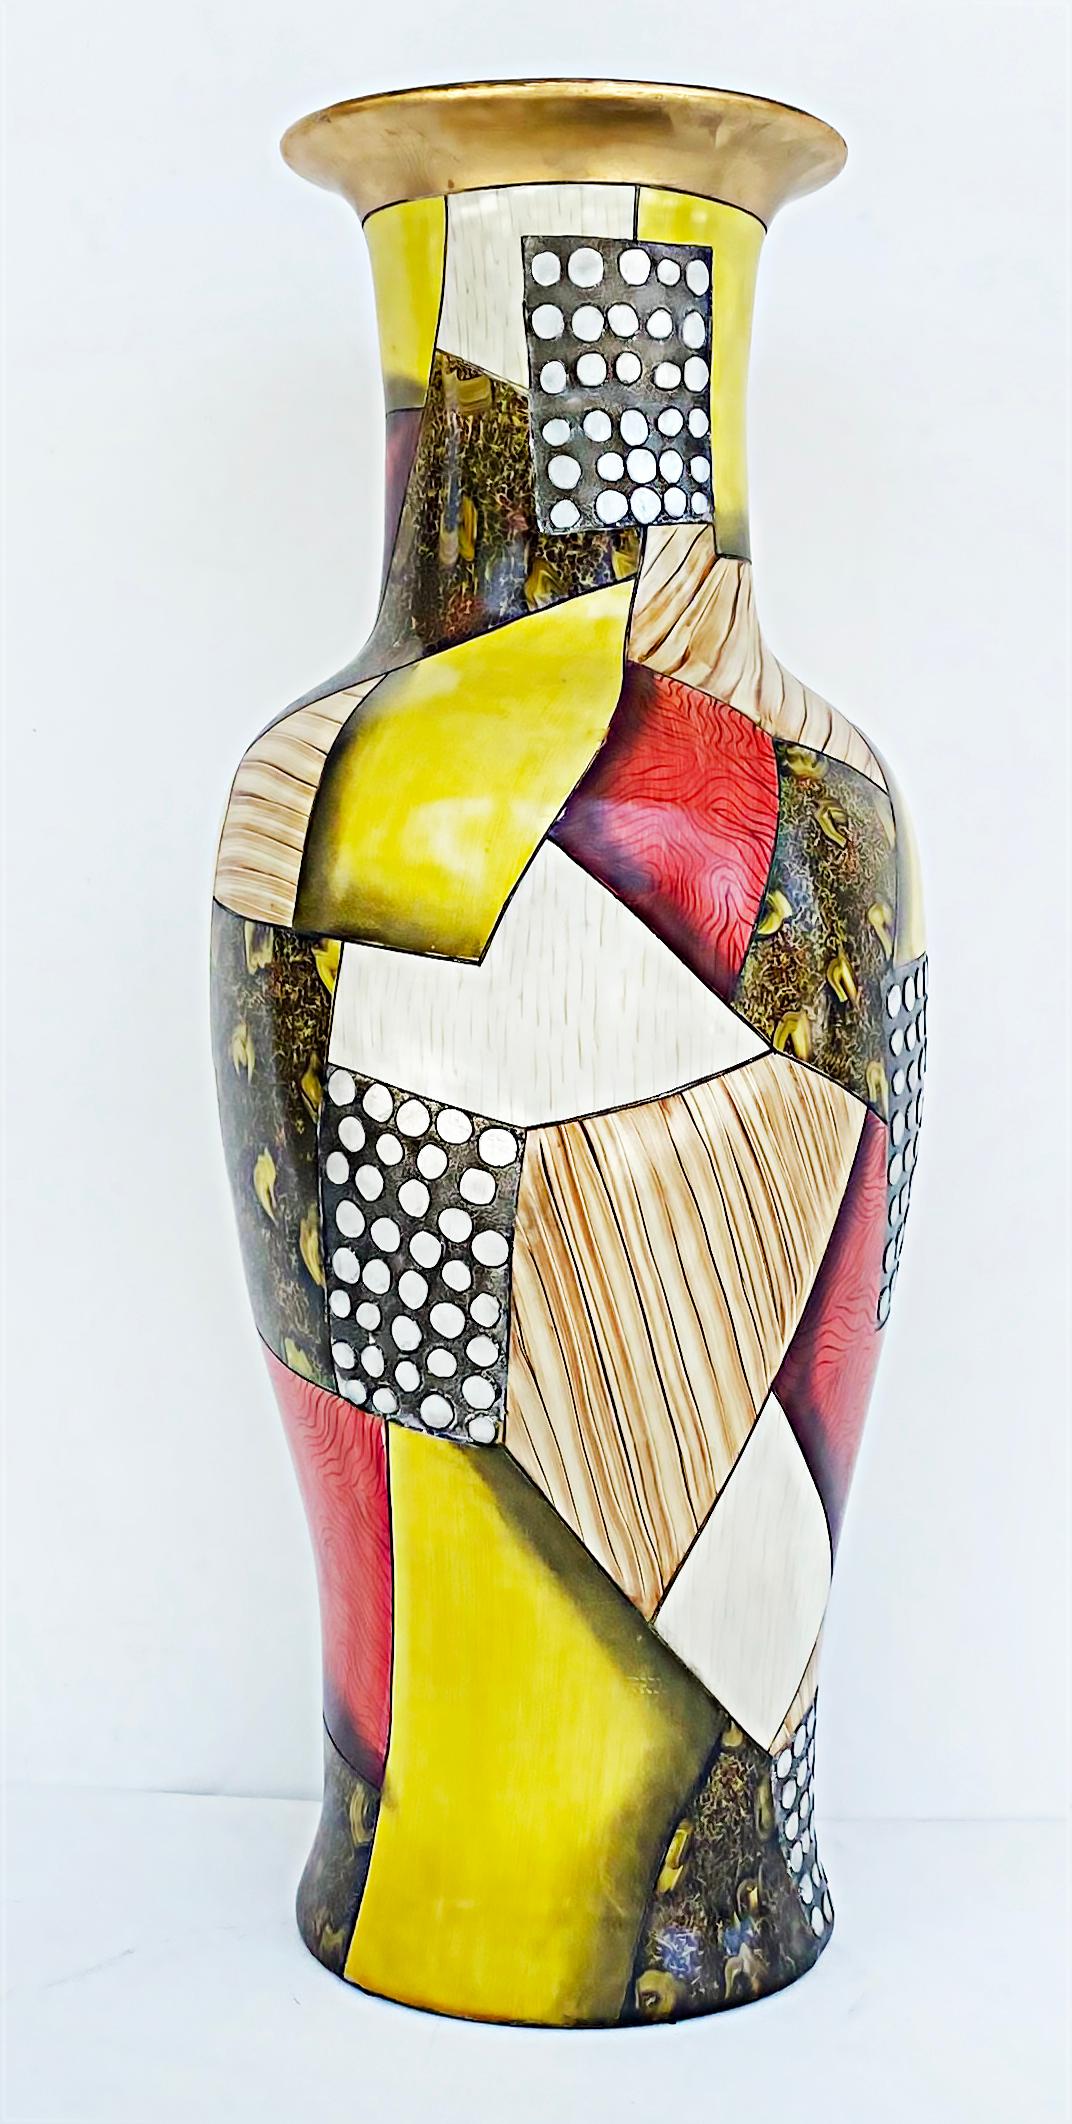 Giovanni Desimone Grand vase en poterie italienne, motifs abstraits dorés


Nous proposons à la vente un grand vase abstrait en poterie italienne colorée et dorée de Giovanni Desimone, vers 1980. Le vase est fini en motifs audacieux et colorés avec